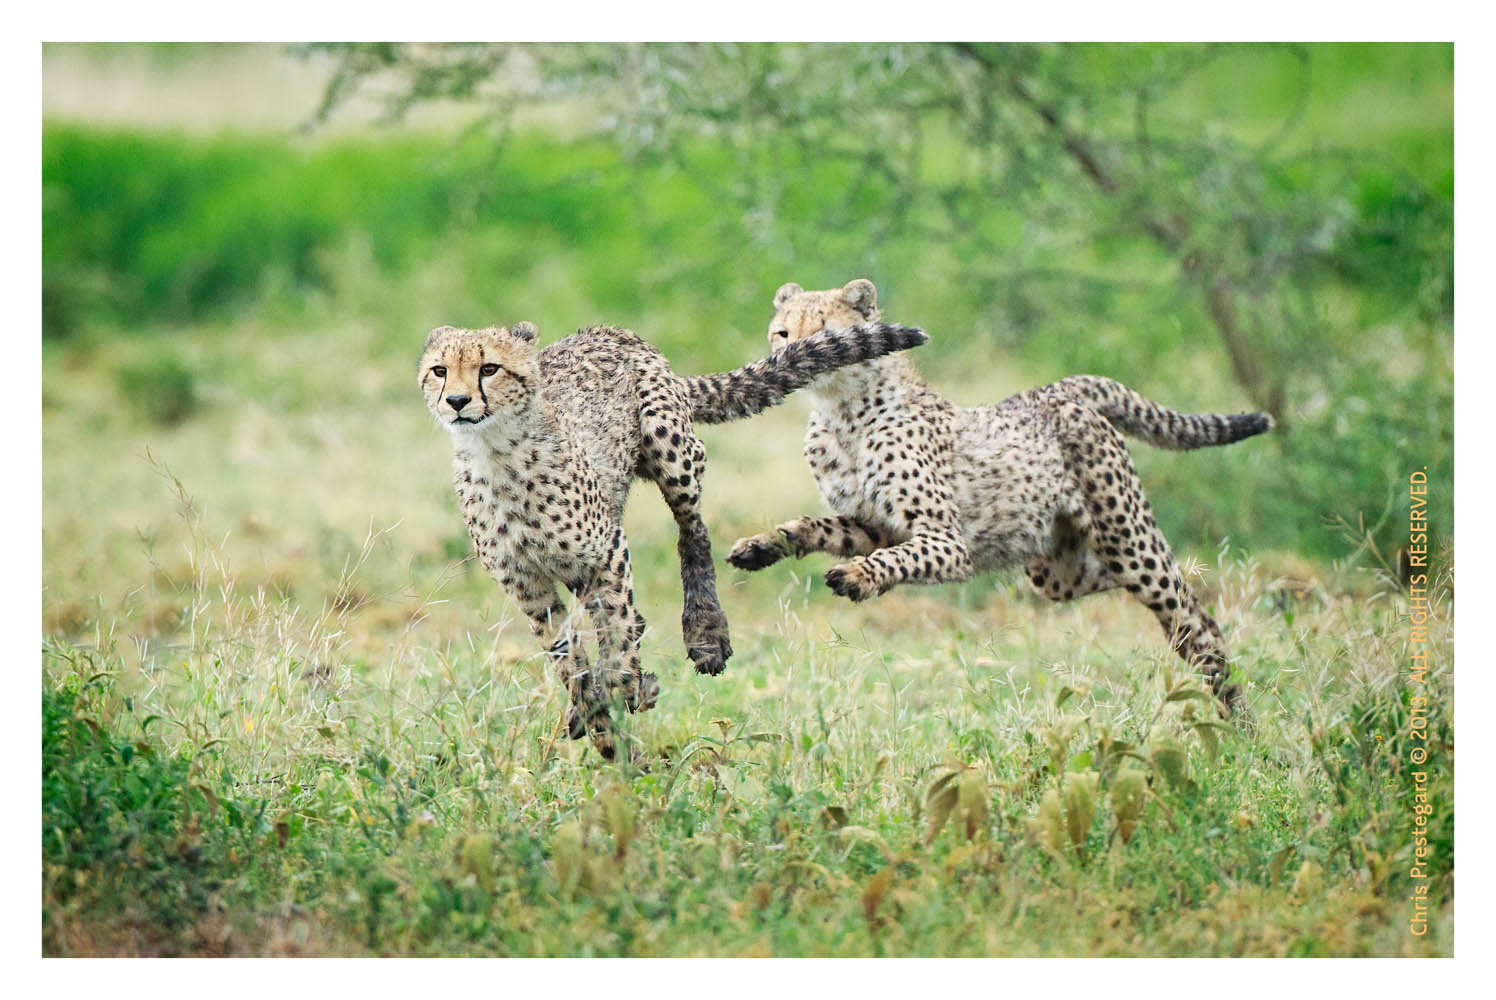 Cheetahs at Ndutu, Tanzania Feb. 2013